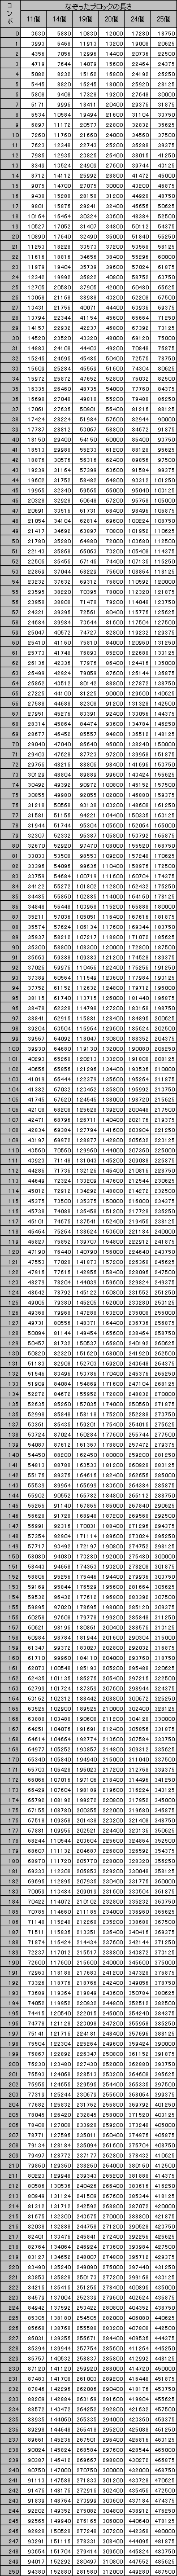 なぞった長さとコンボ数から決定される「なぞり点」の一覧（ブロック数11個～25個）